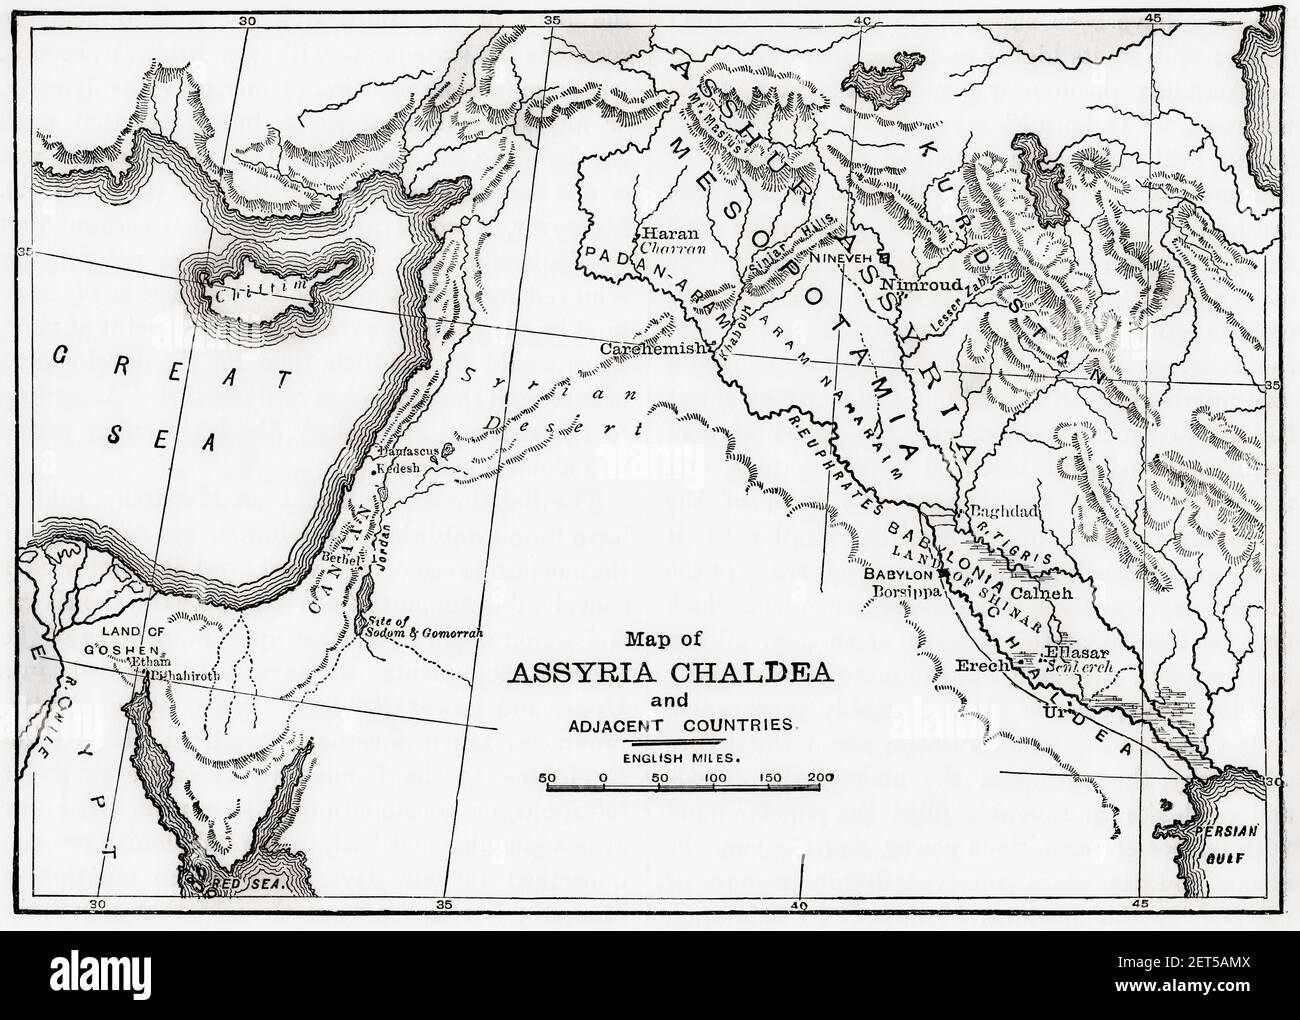 Carte d'Assyria Chaldea et des pays voisins. De l'Histoire universelle de Cassell, publié en 1888. Banque D'Images